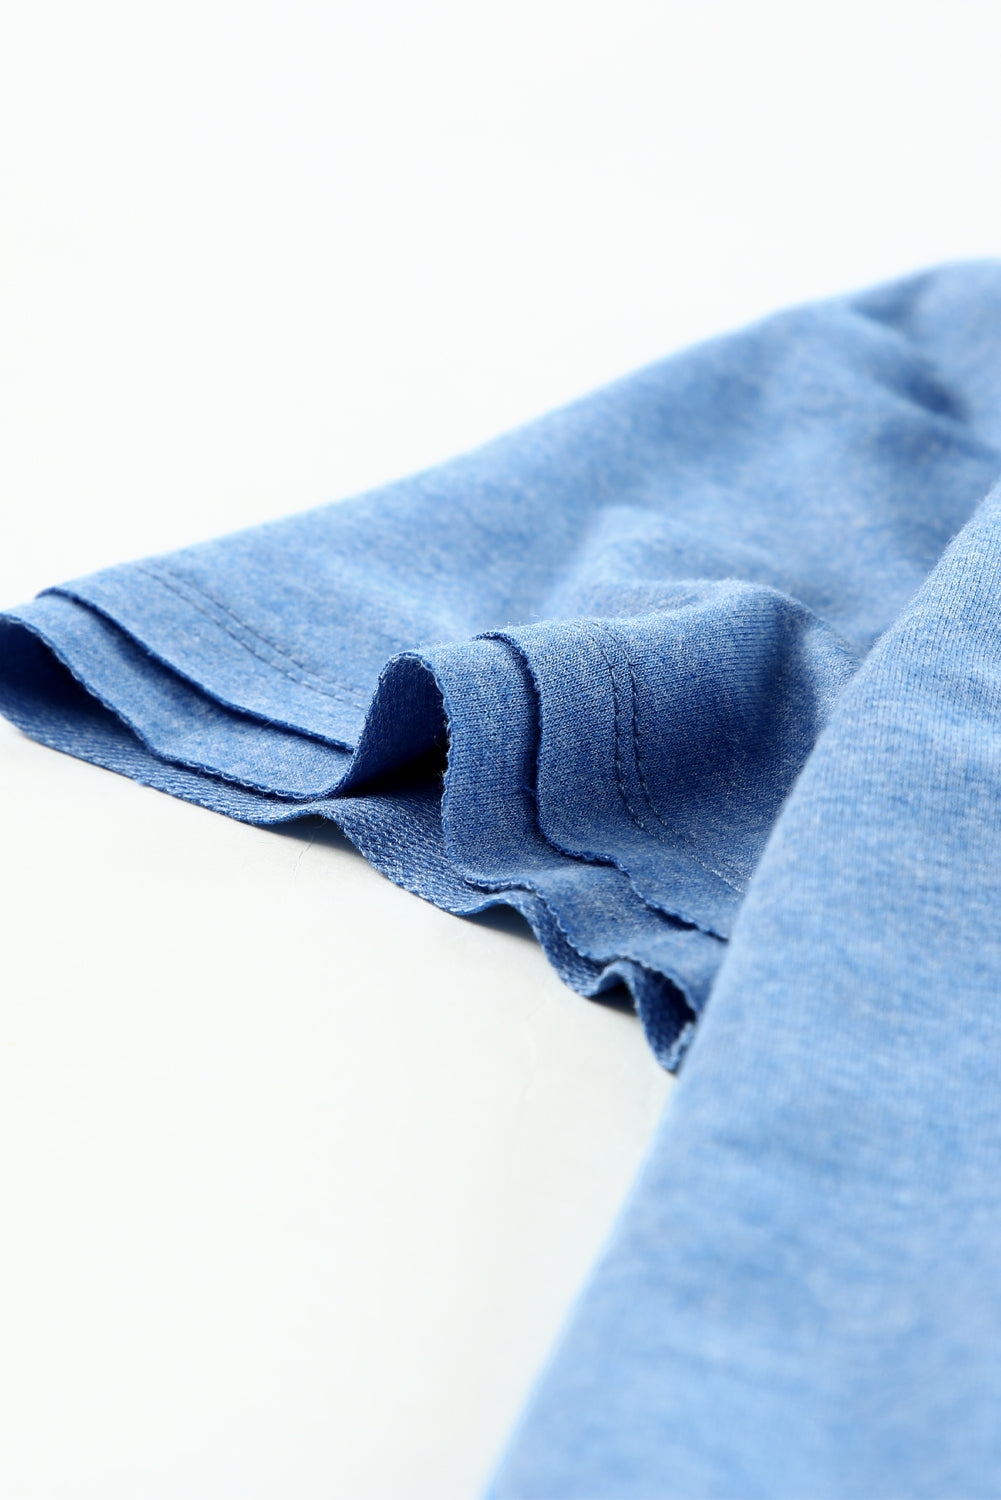 T-shirt a maniche corte con scollo a V lavato minerale azzurro cielo